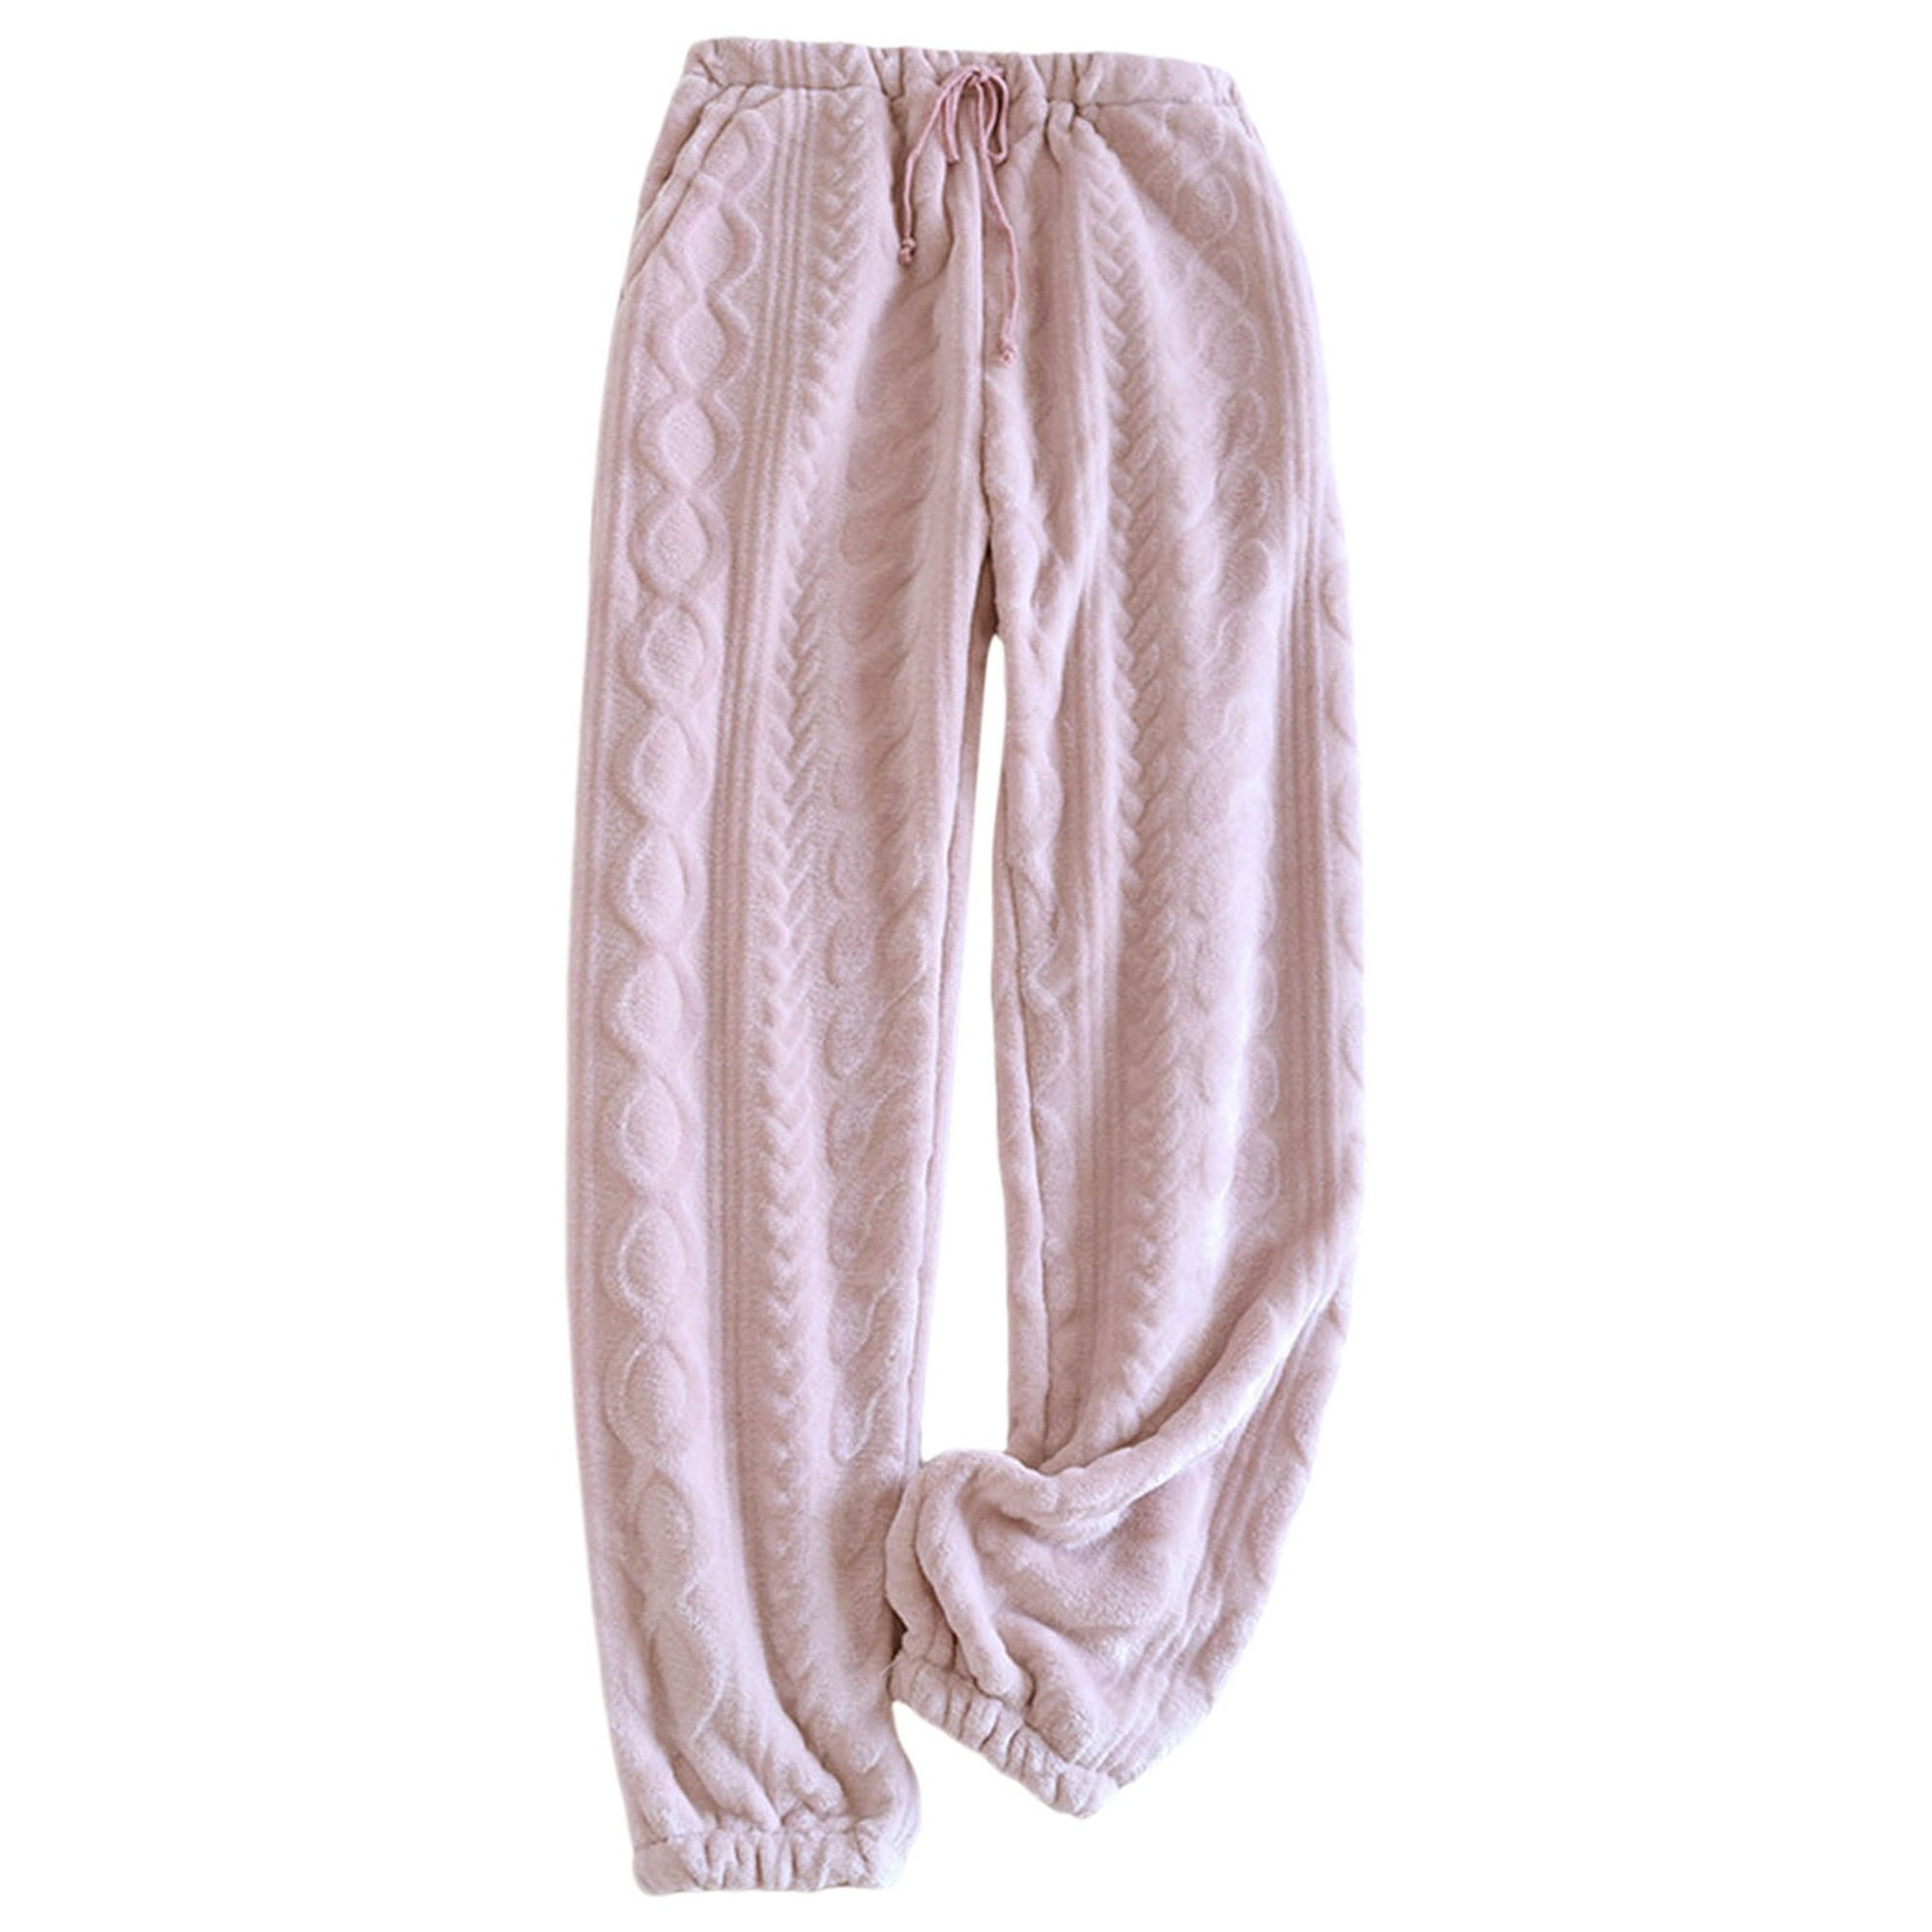 Gibobby Pantalones para el frío de mujer Pantalones de mujer Pantalones  casuales de franela cálidos de invierno Pantalones ajustables Moda  de(Rosa,G)